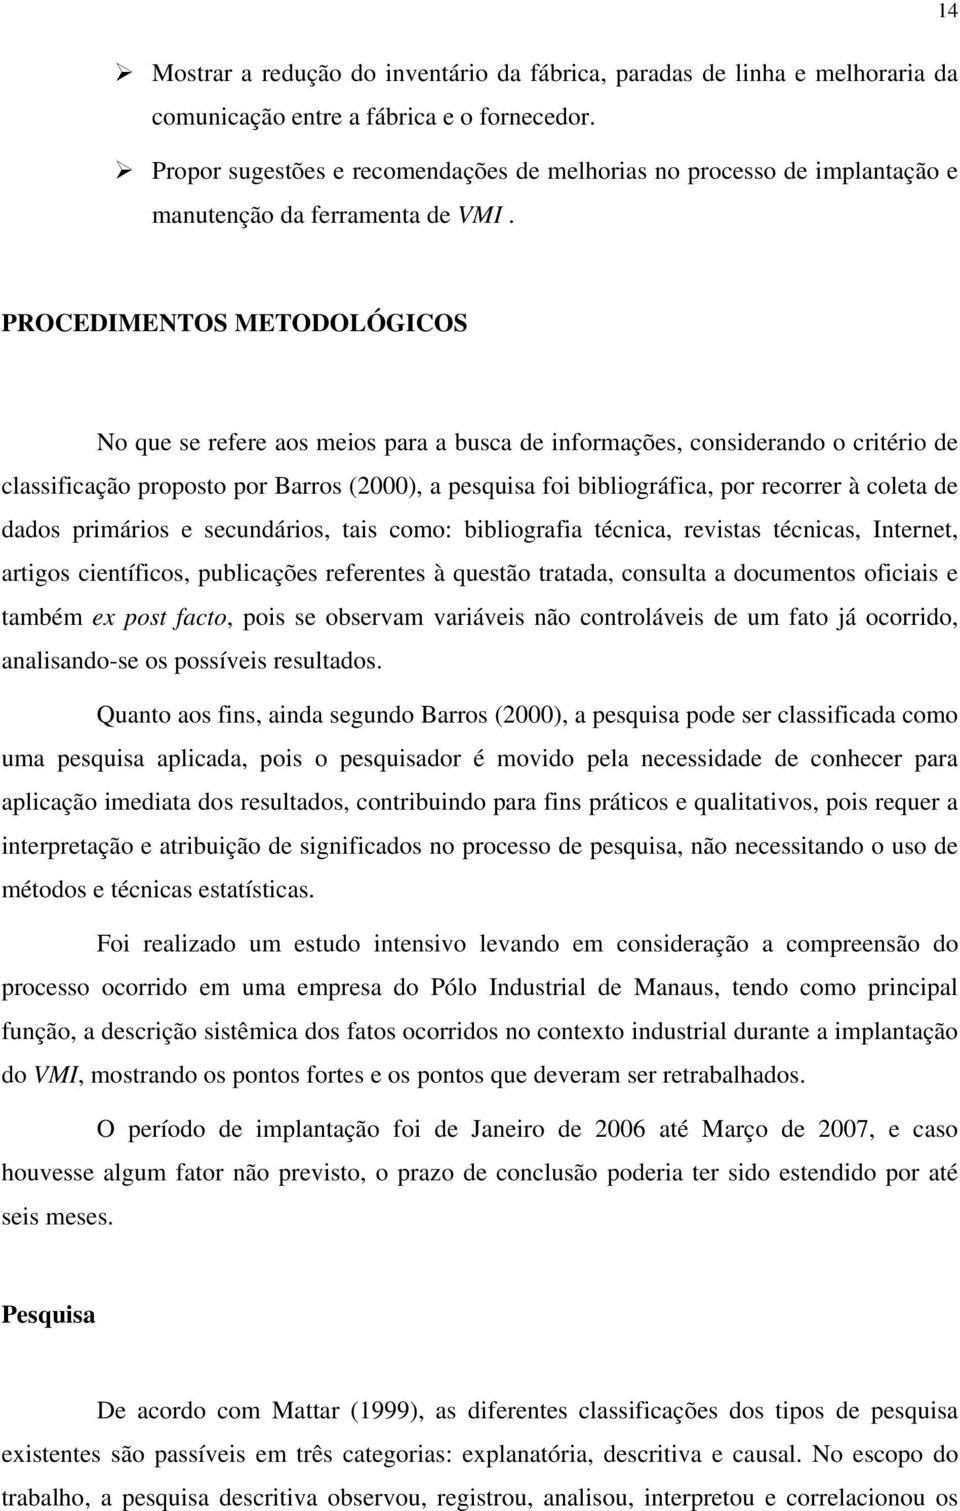 PROCEDIMENTOS METODOLÓGICOS No que se refere aos meios para a busca de informações, considerando o critério de classificação proposto por Barros (2000), a pesquisa foi bibliográfica, por recorrer à